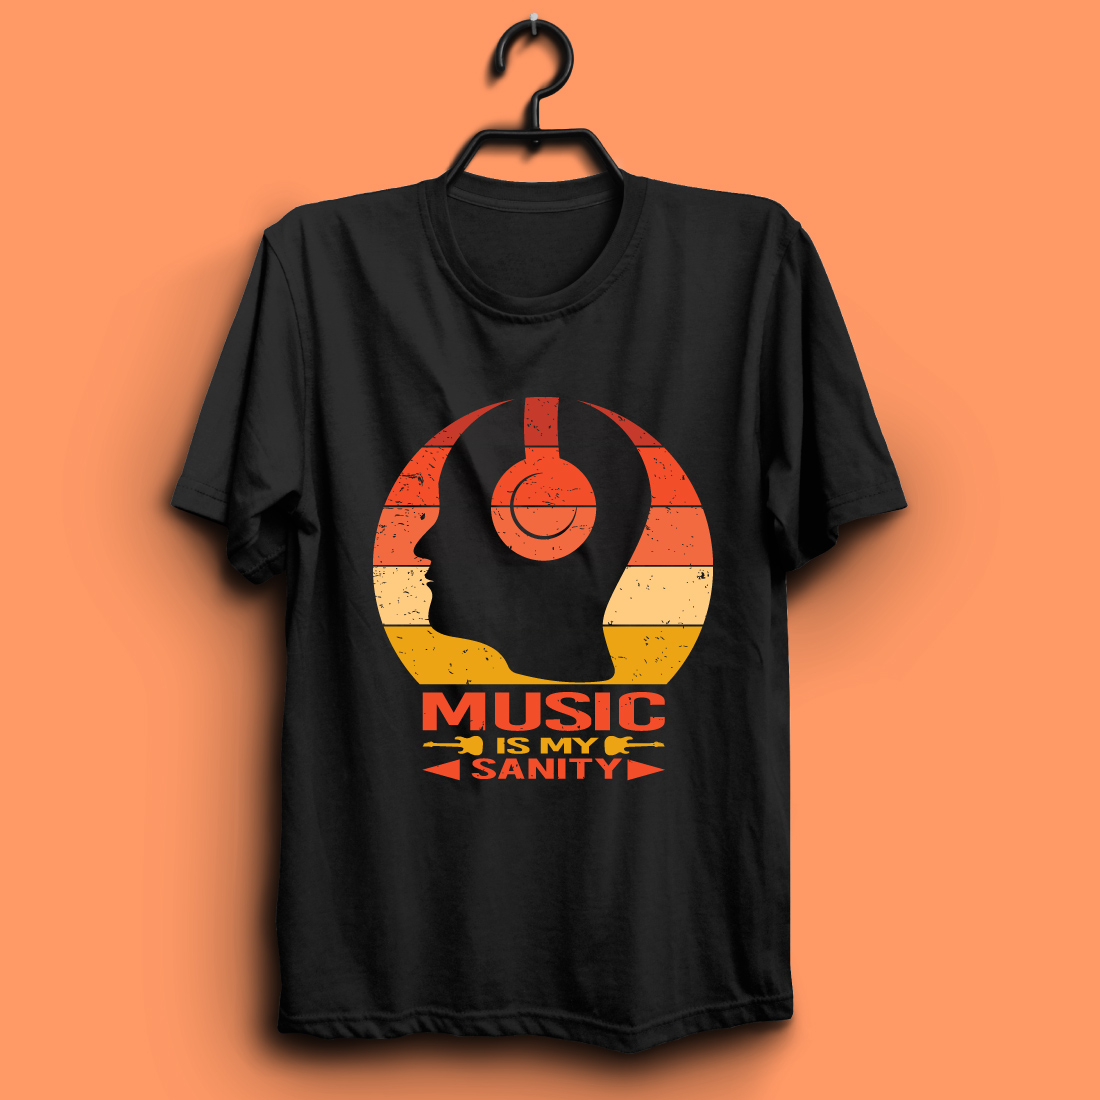 music t shirt design02 402